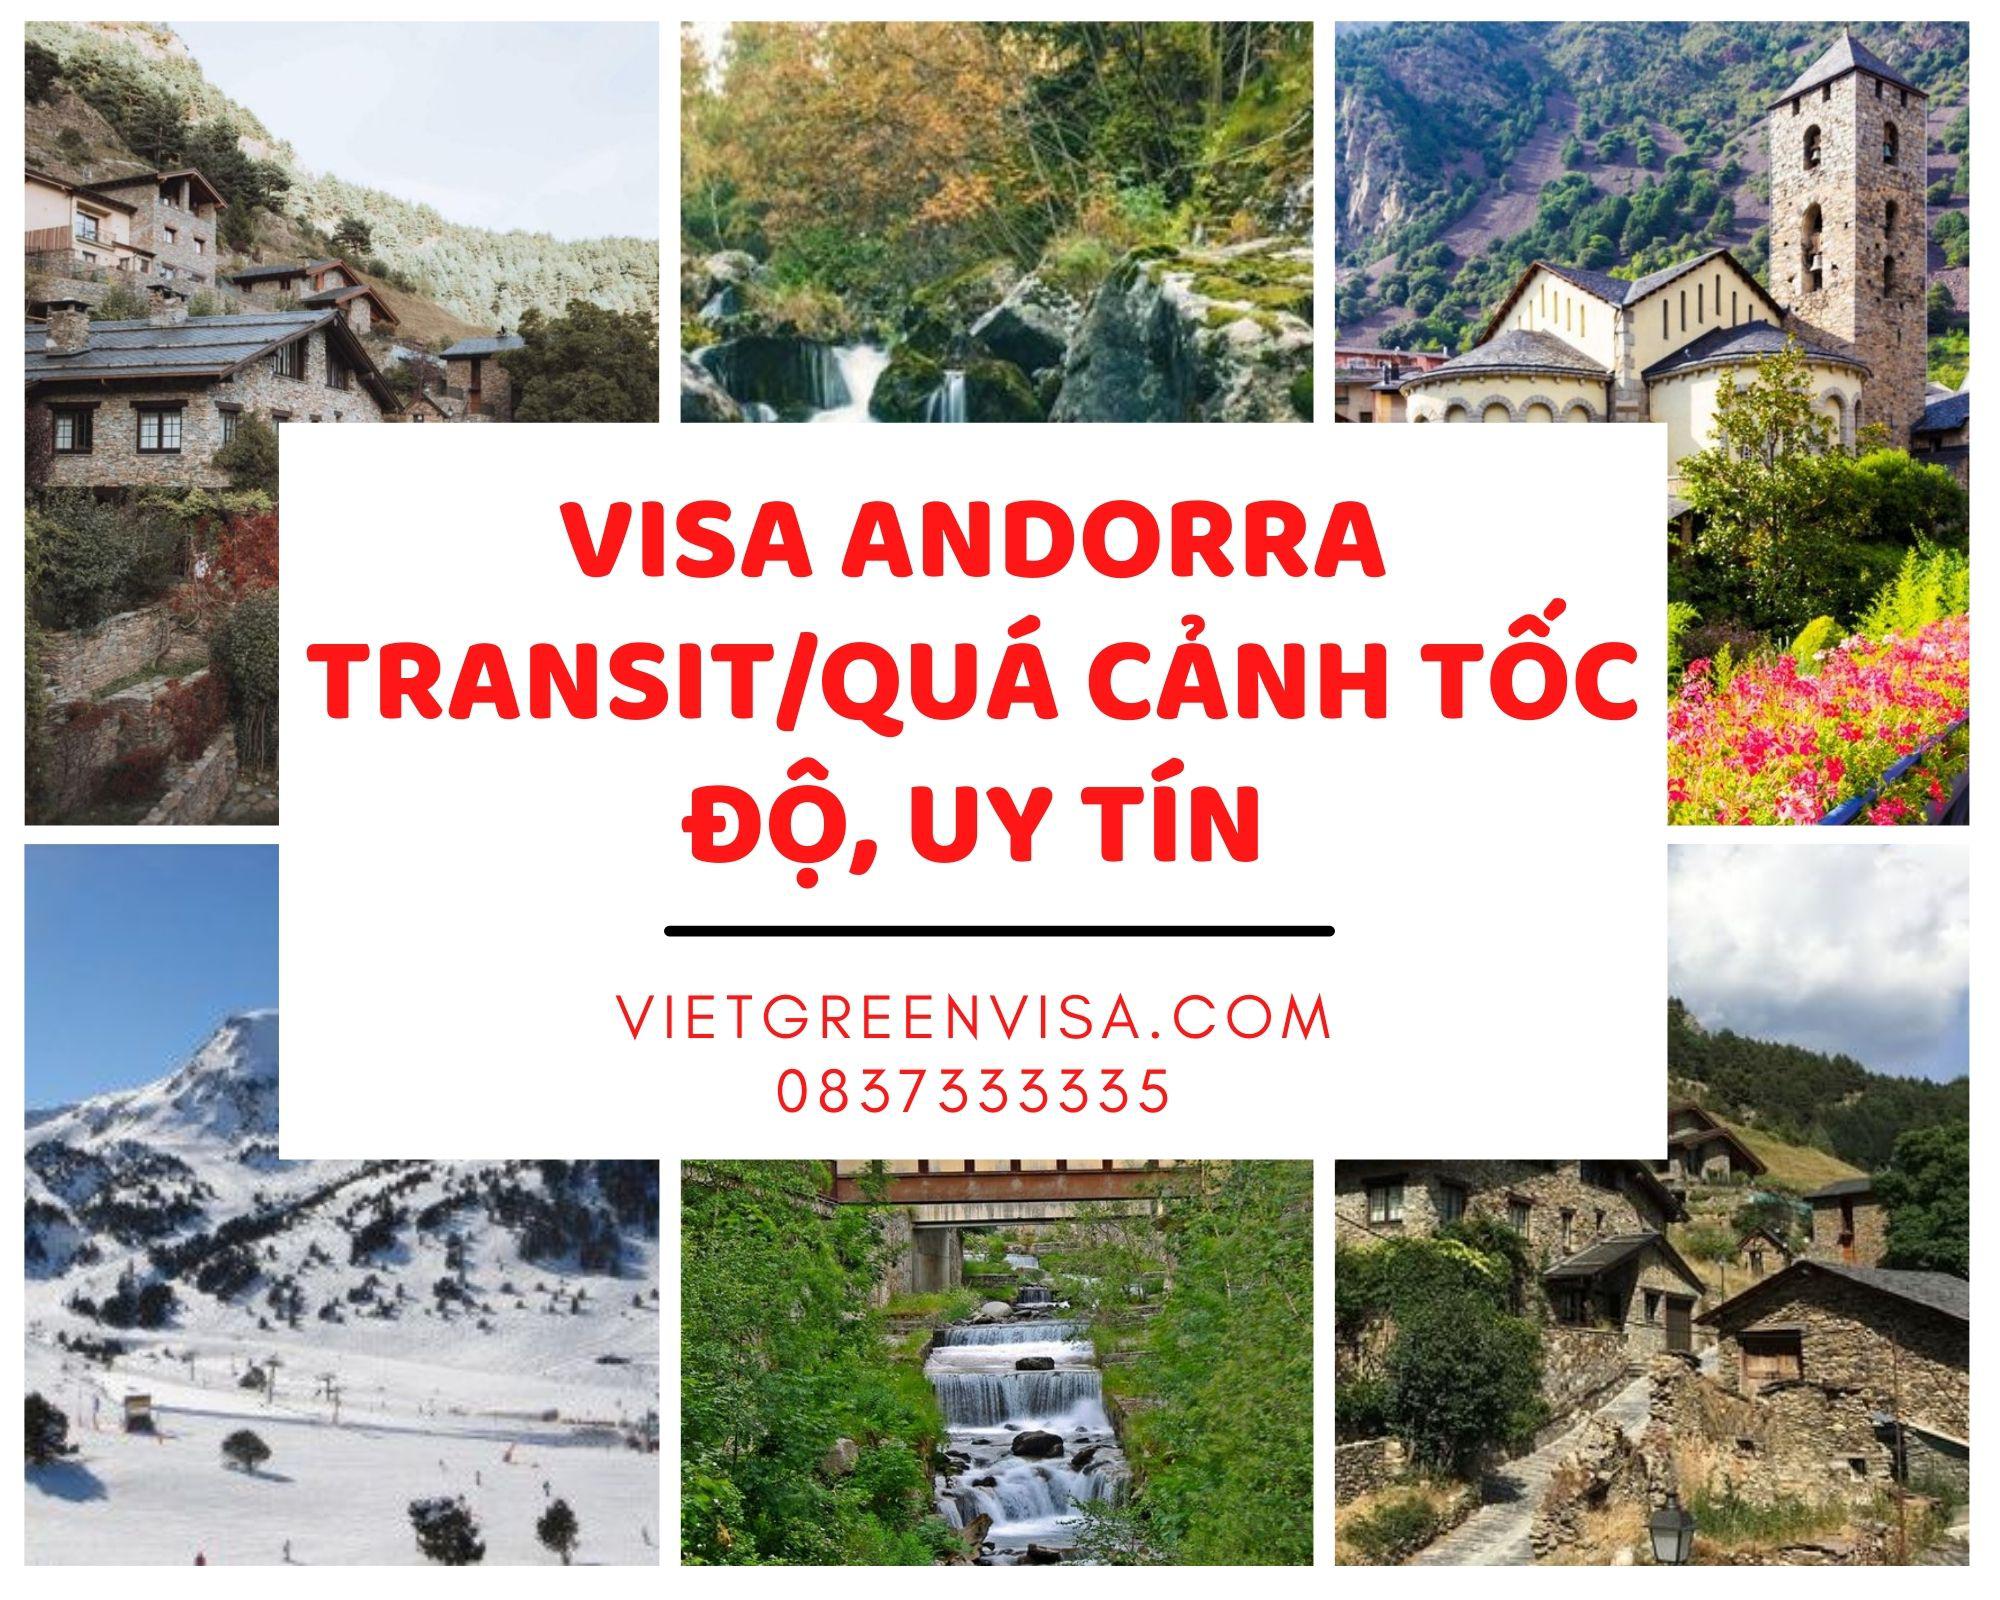 Hỗ trợ làm visa Andorra quá cảnh, transit uy tín